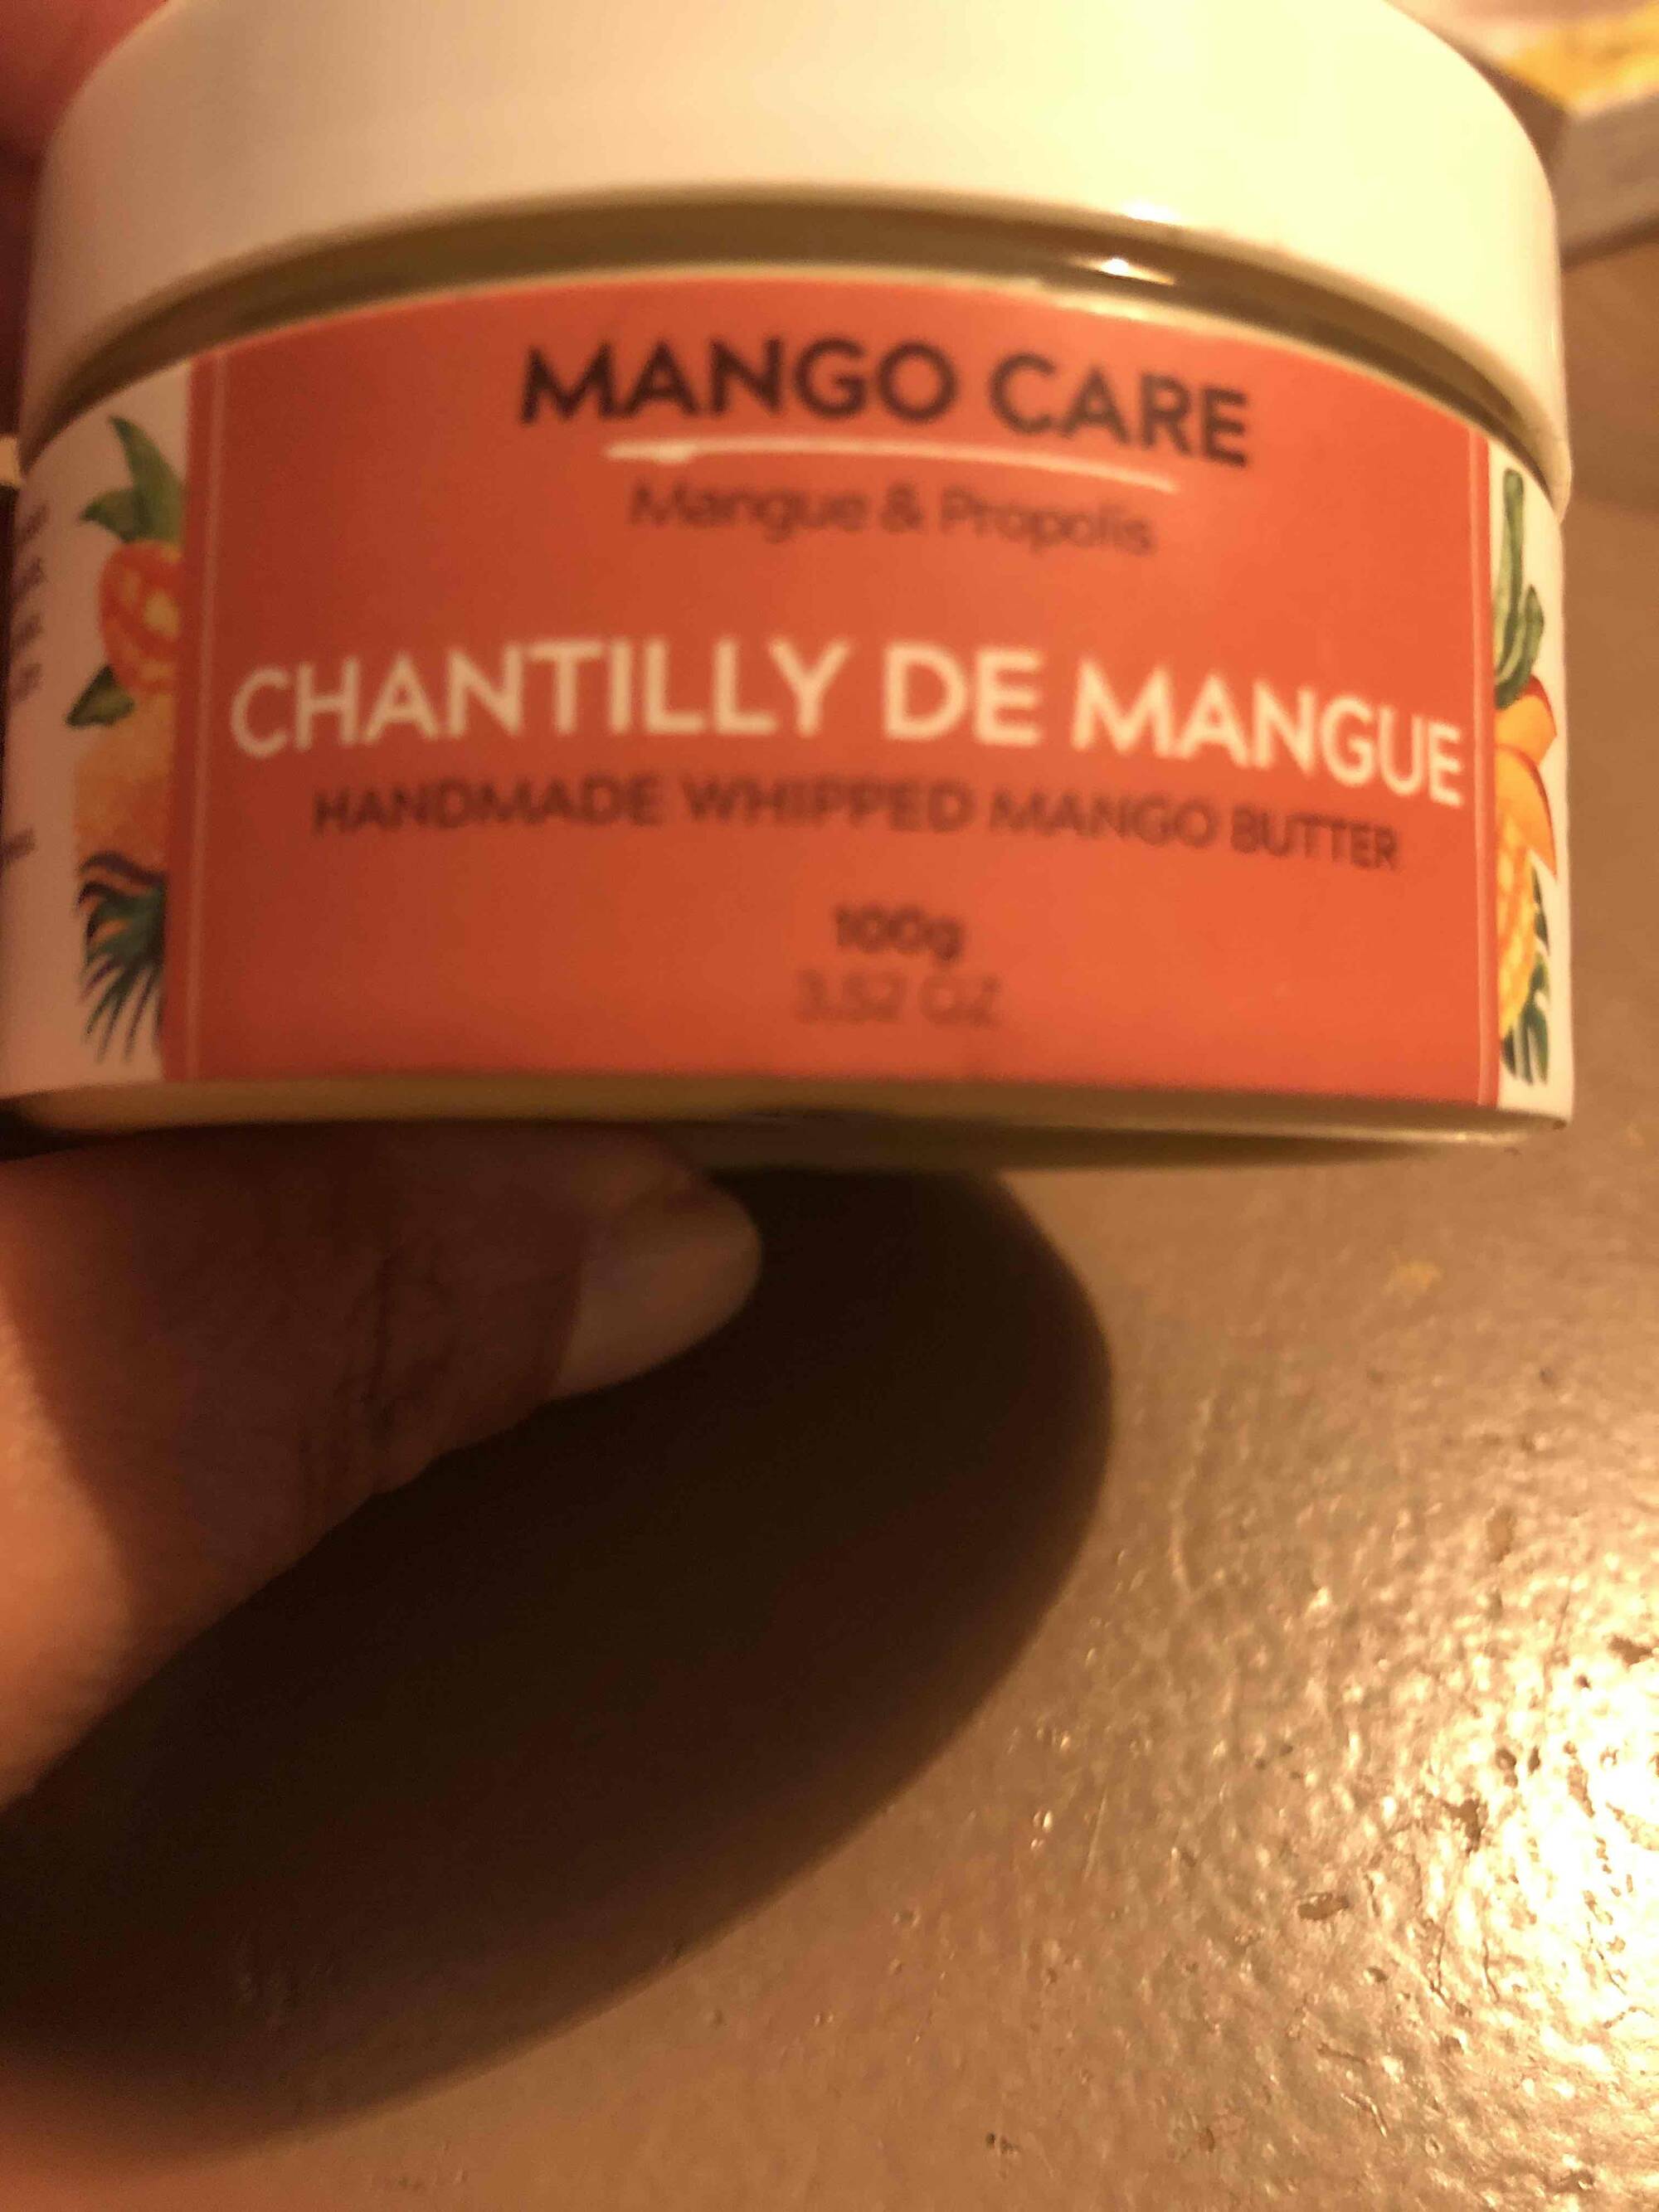 MANGOBUTTERFULL - Chantilly de mangue